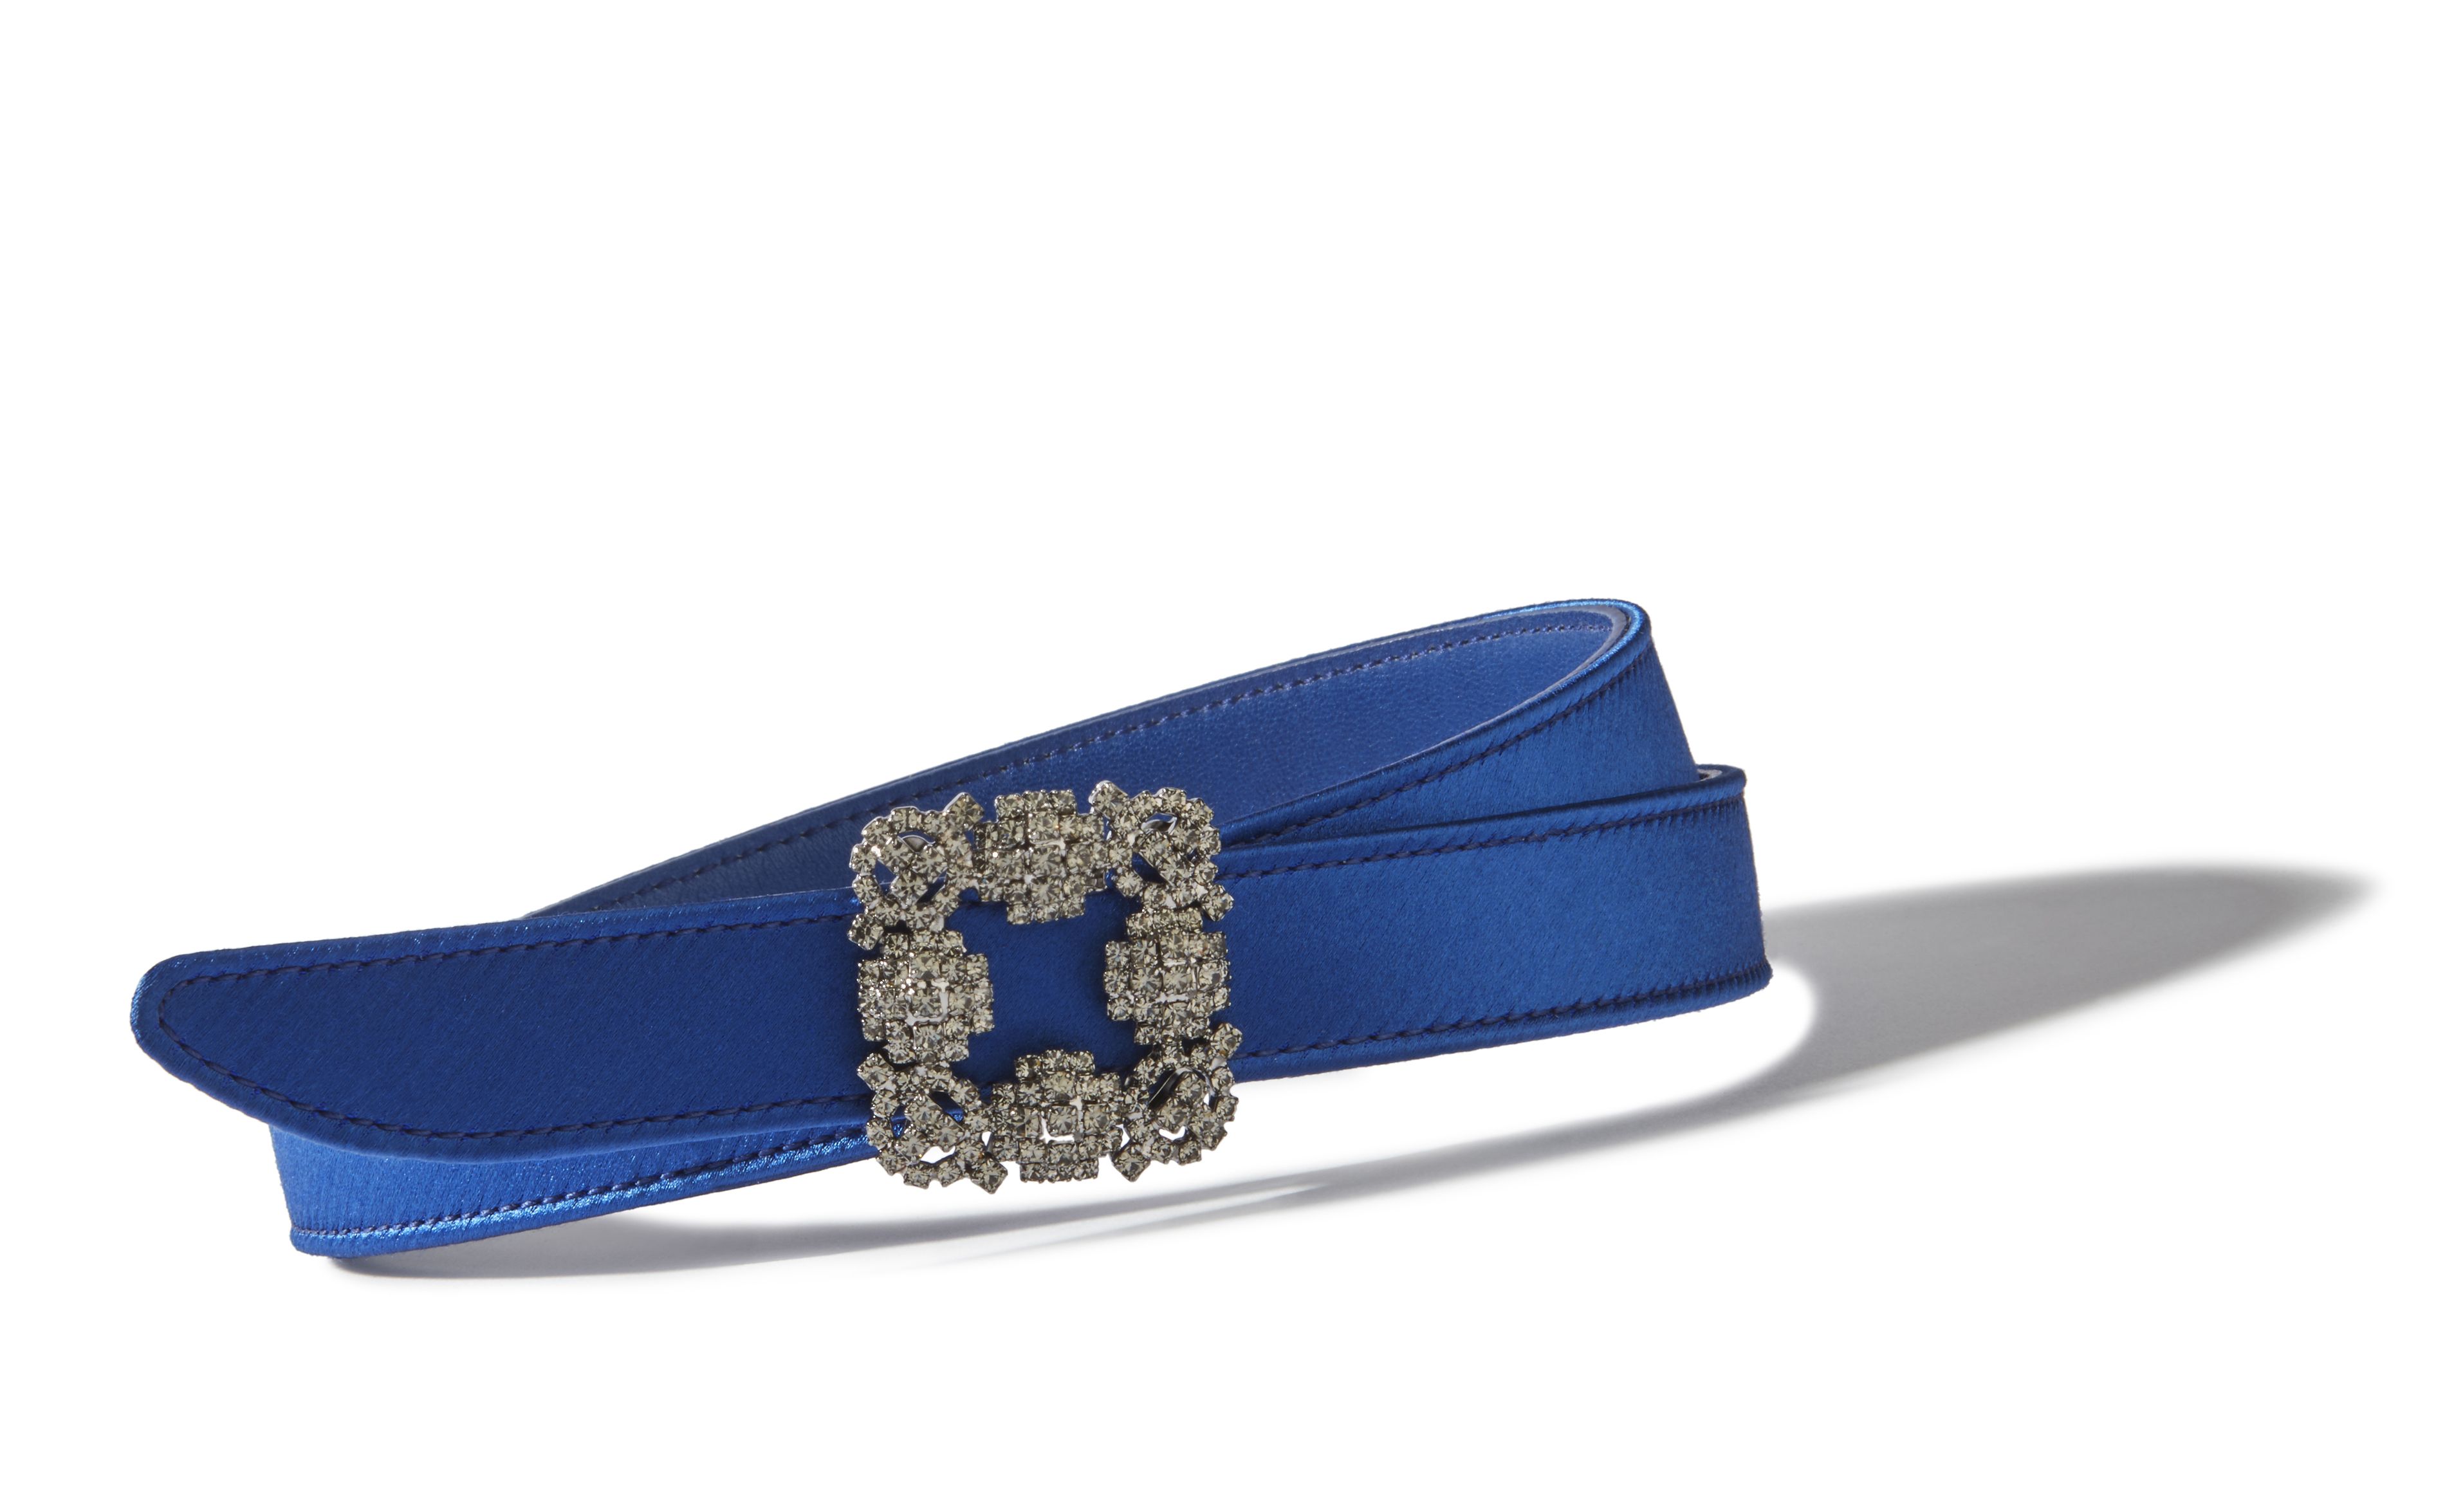 Designer Blue Satin Crystal Buckled Belt - Image Main